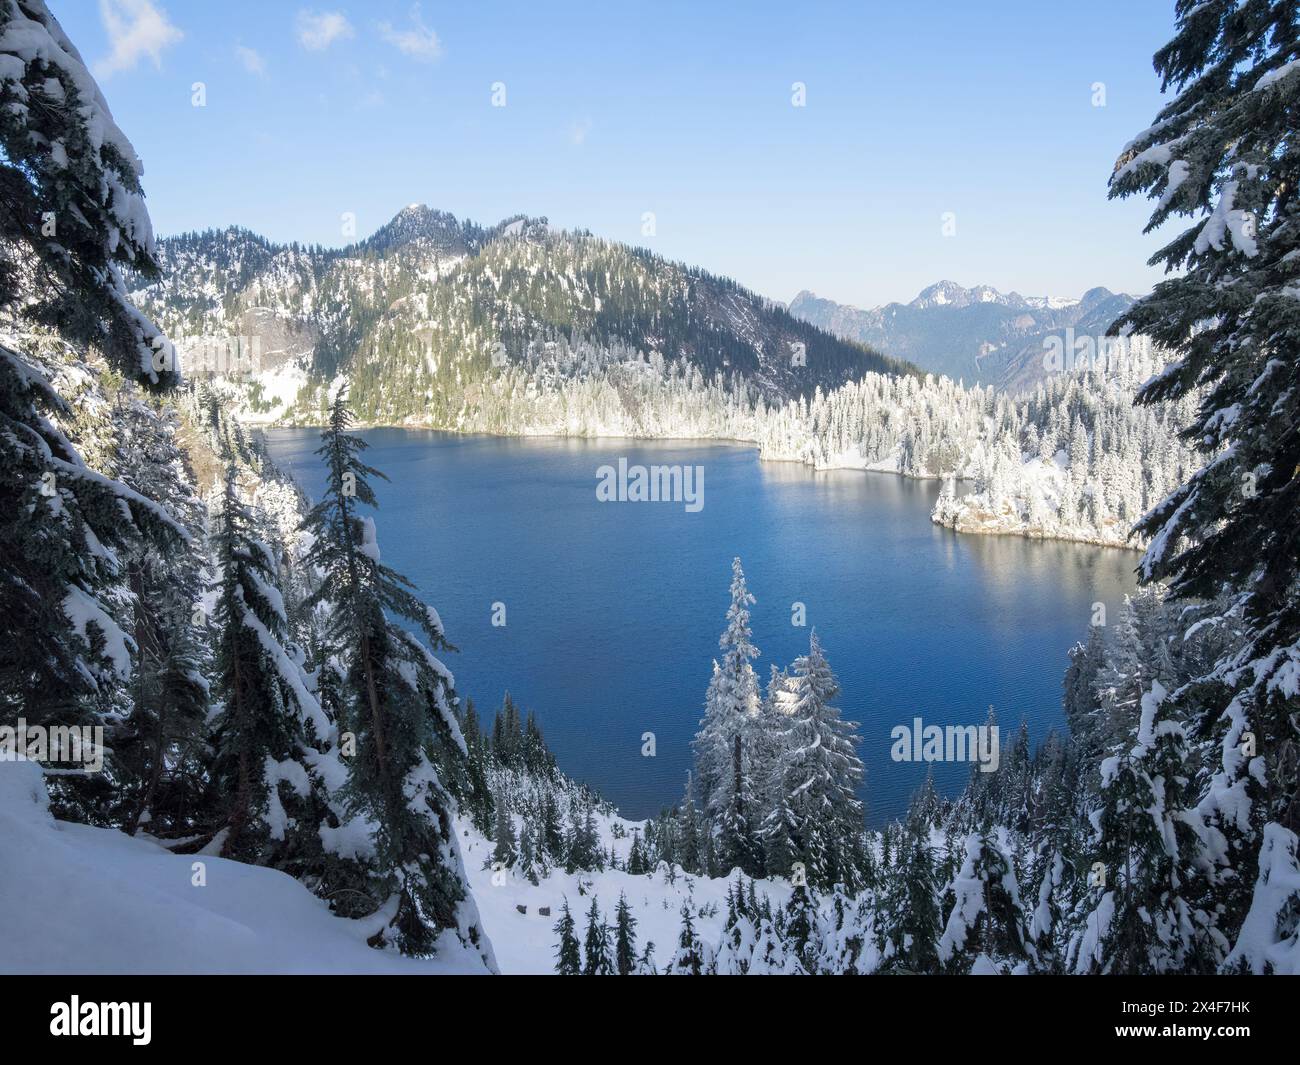 États-Unis, État de Washington, Alpine Lakes Wilderness. Vue sur le lac des neiges et les montagnes avec des sapins couverts de neige Banque D'Images